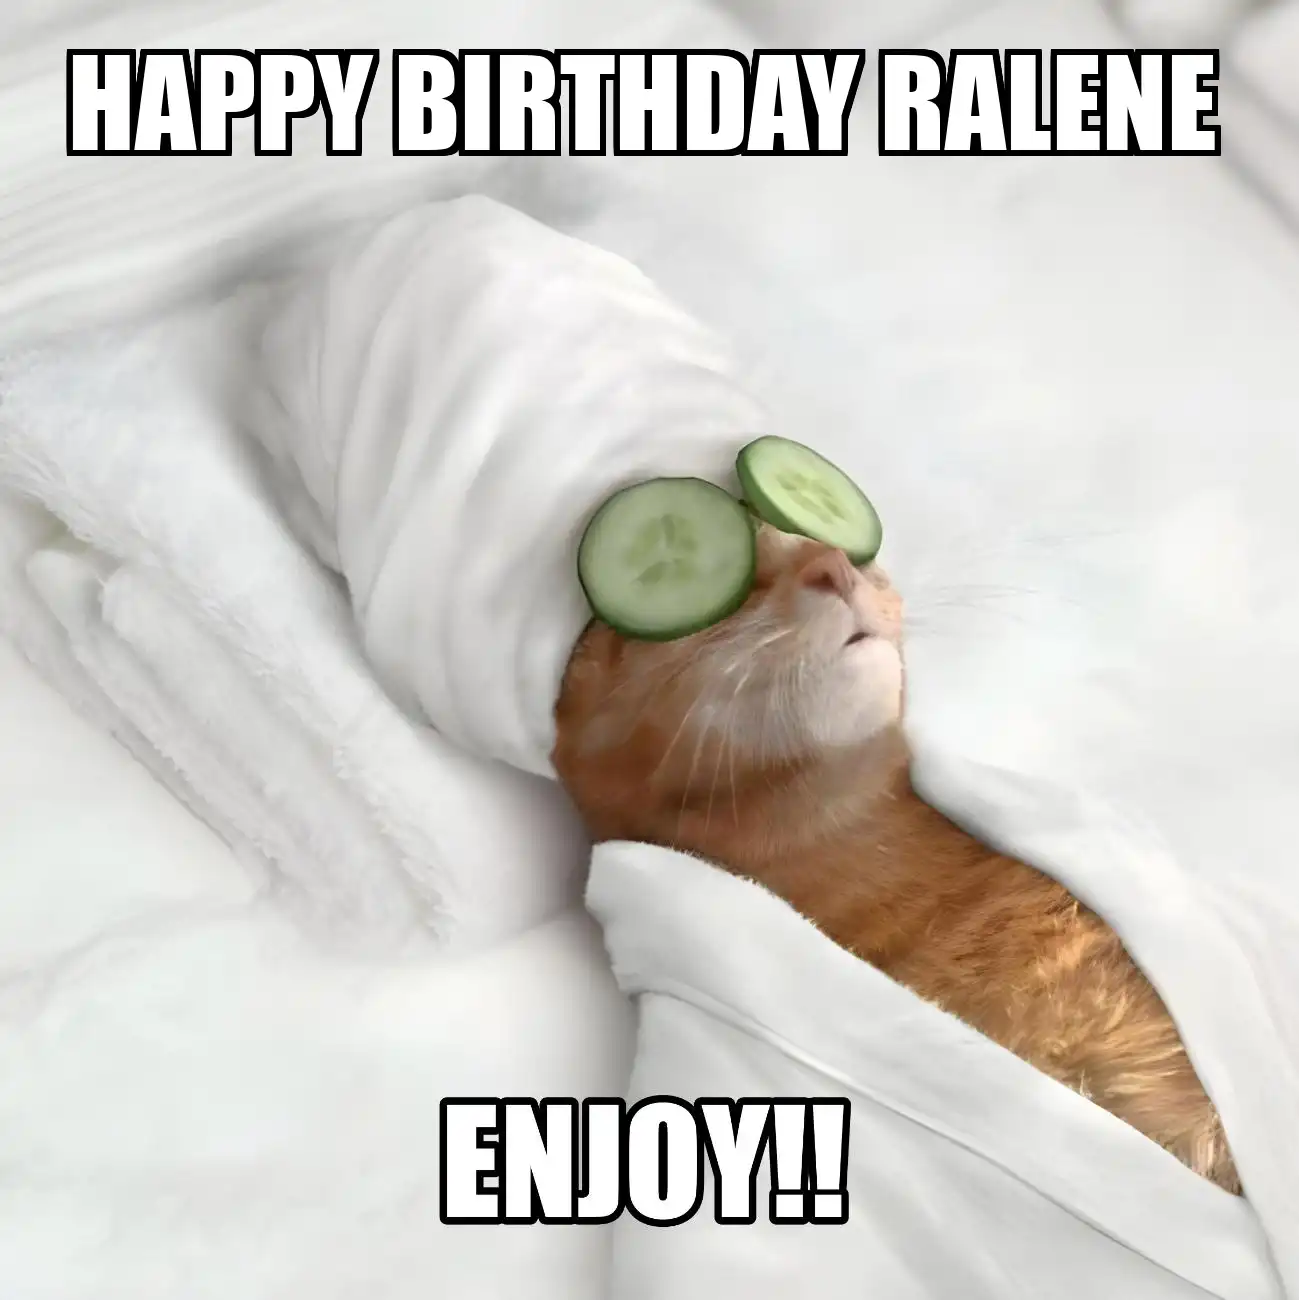 Happy Birthday Ralene Enjoy Cat Meme